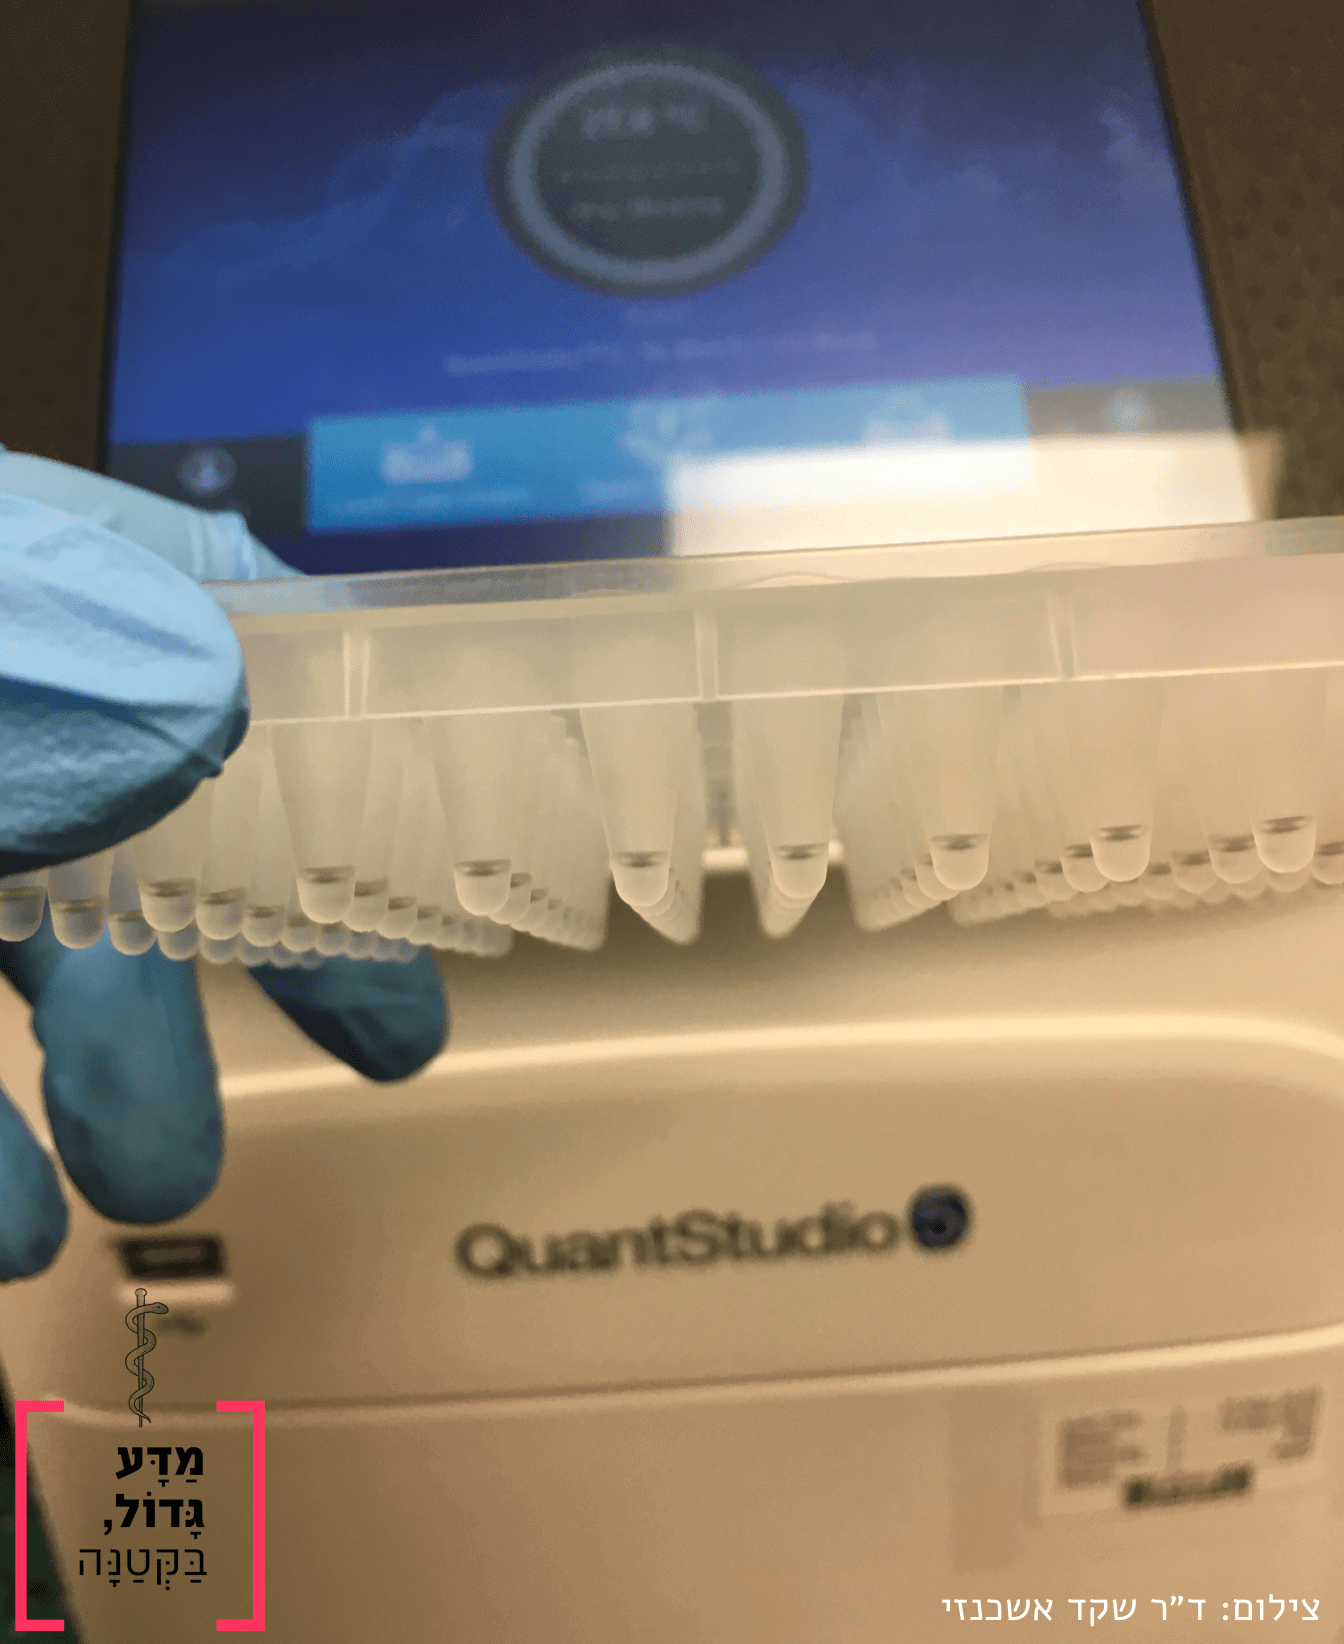 מכשיר real time PCR ודגימות לבדיקה. צילמה ד"ר שקד אשכנזי